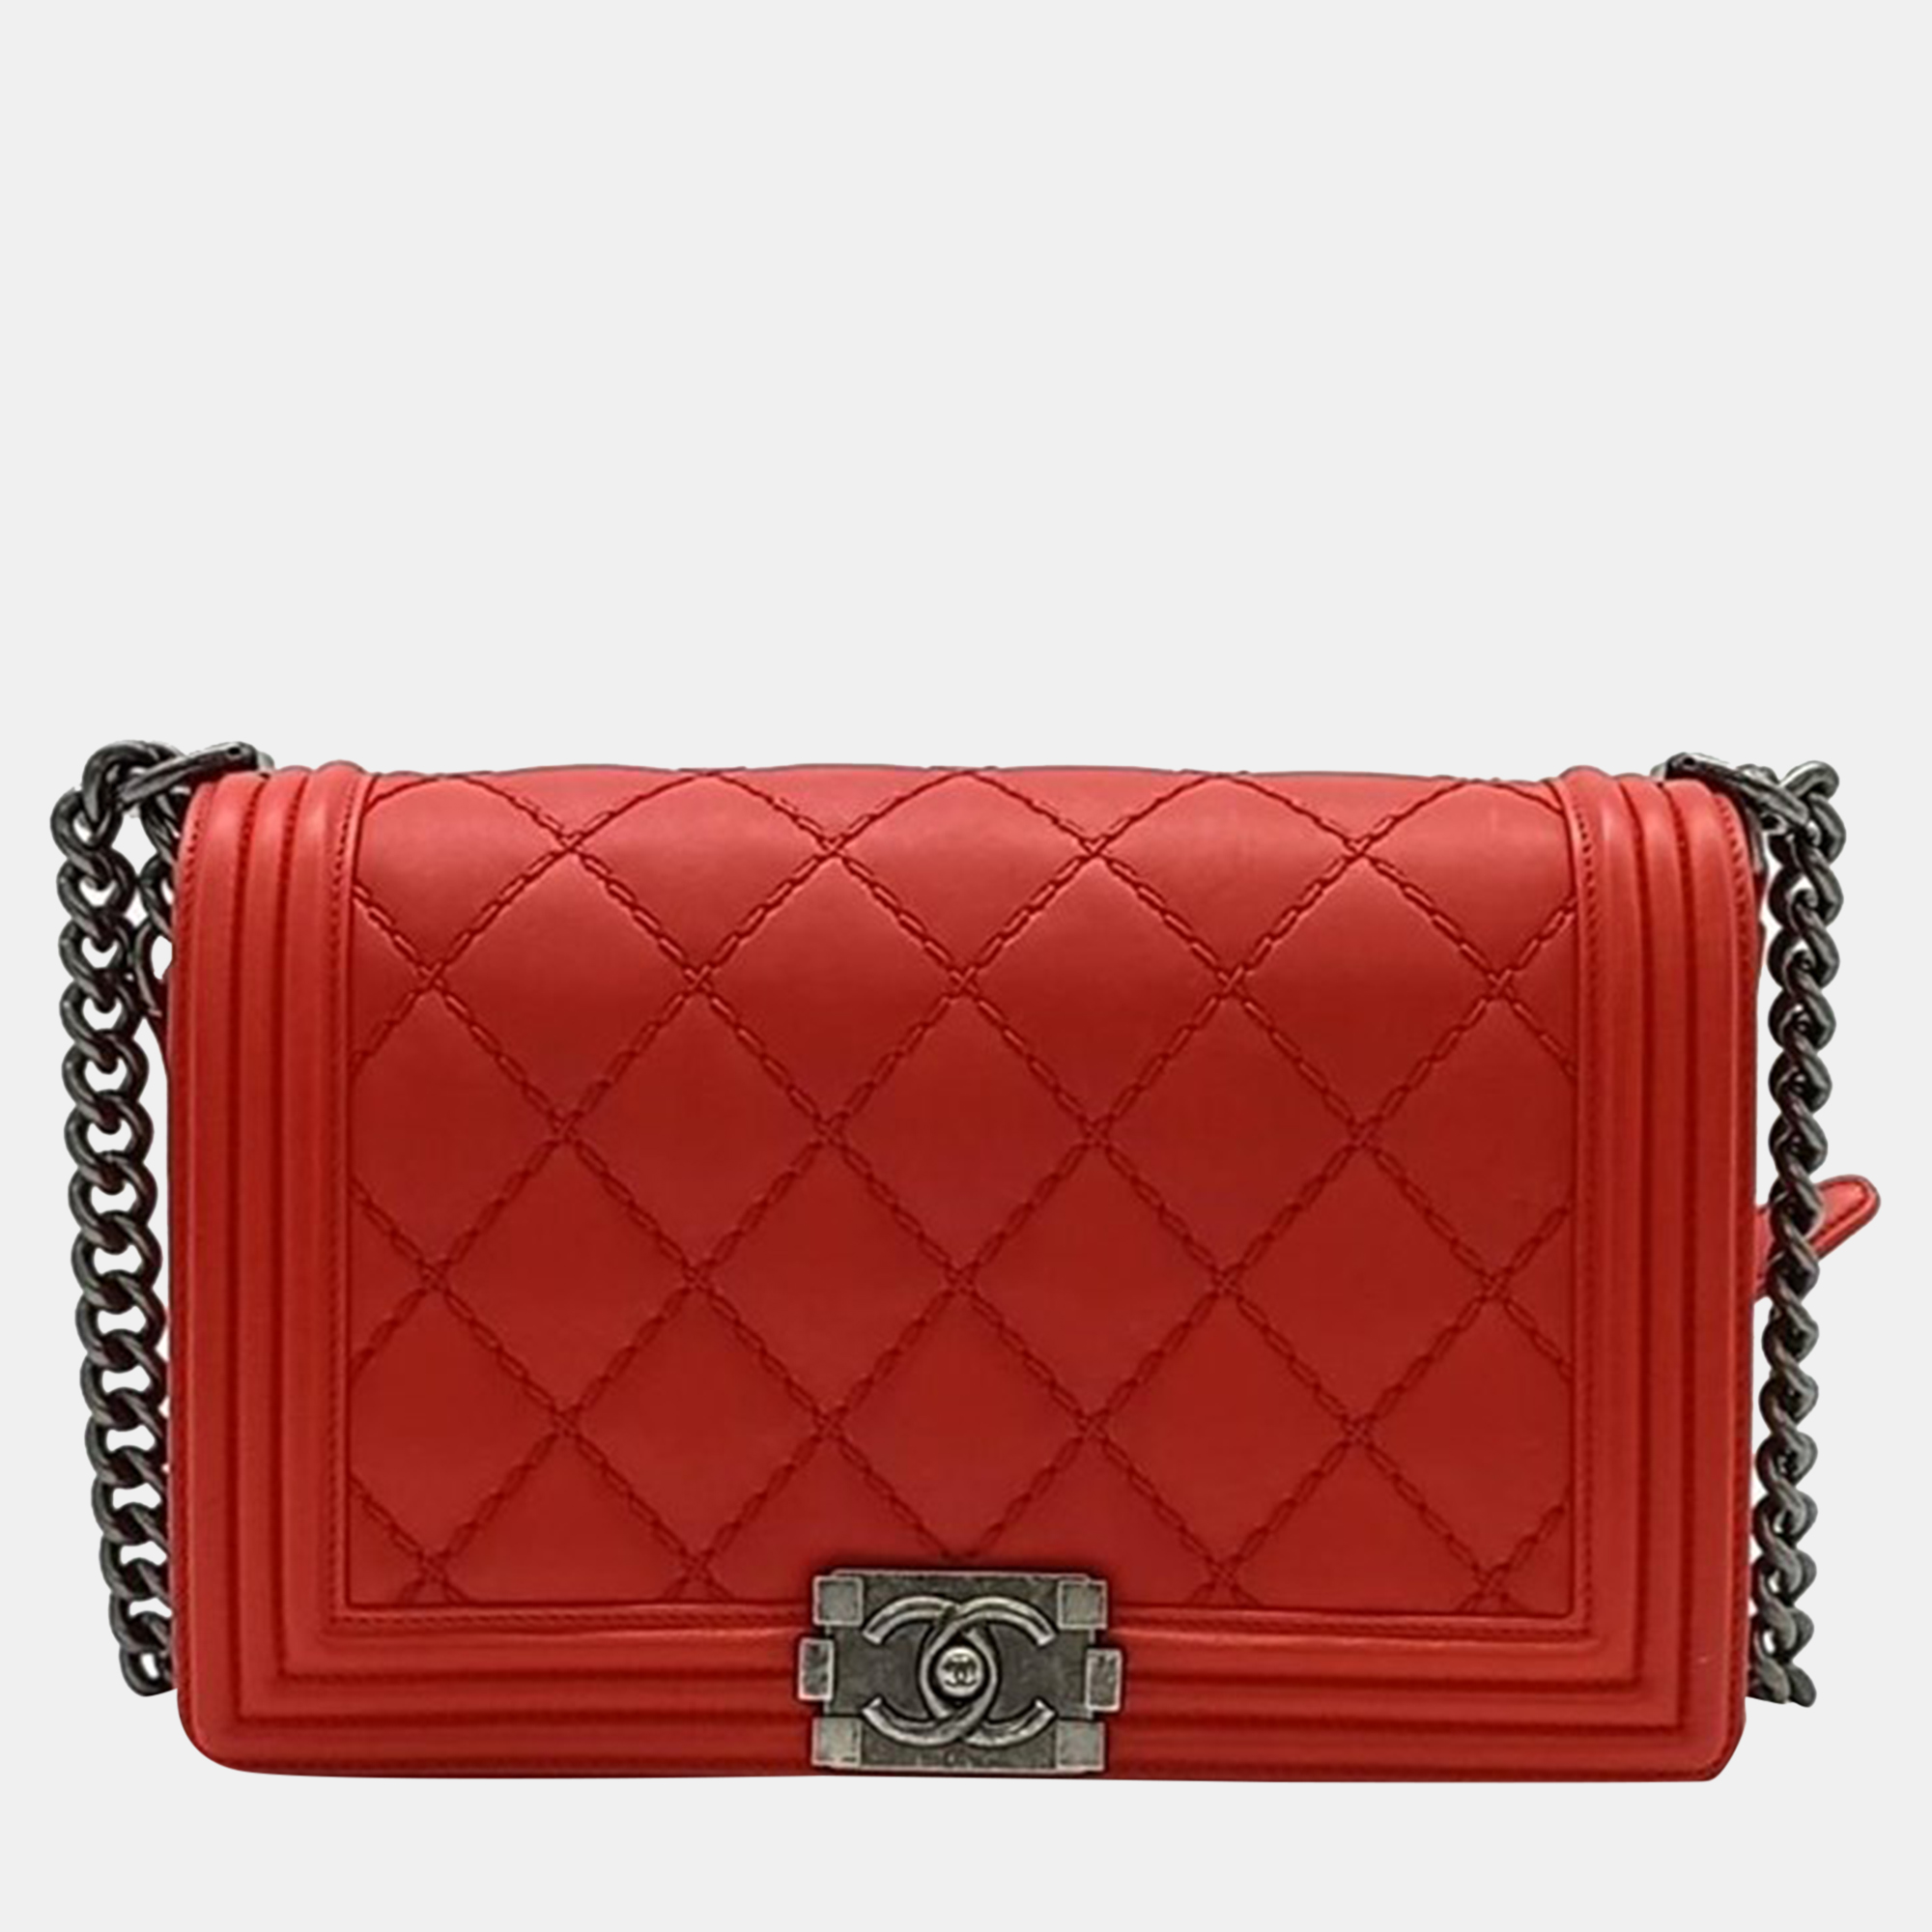 Chanel red tone boy bag medium bag